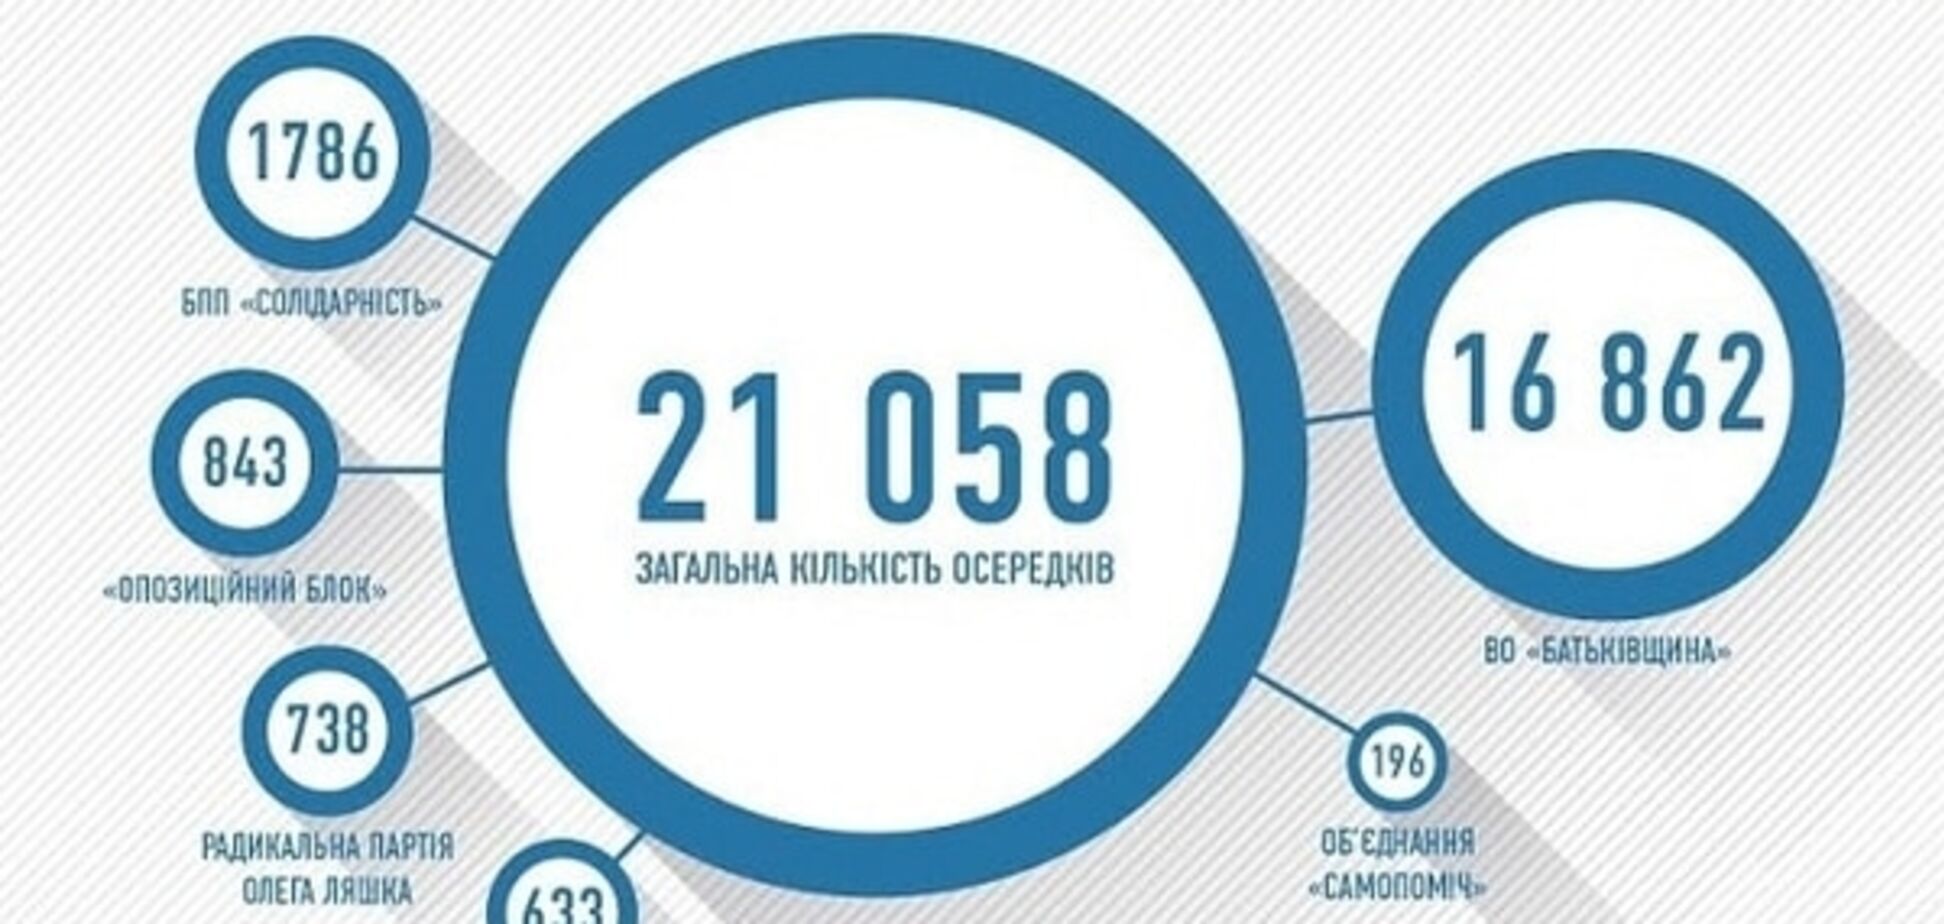 Одесская область лидирует по количеству приемных парламентских партий